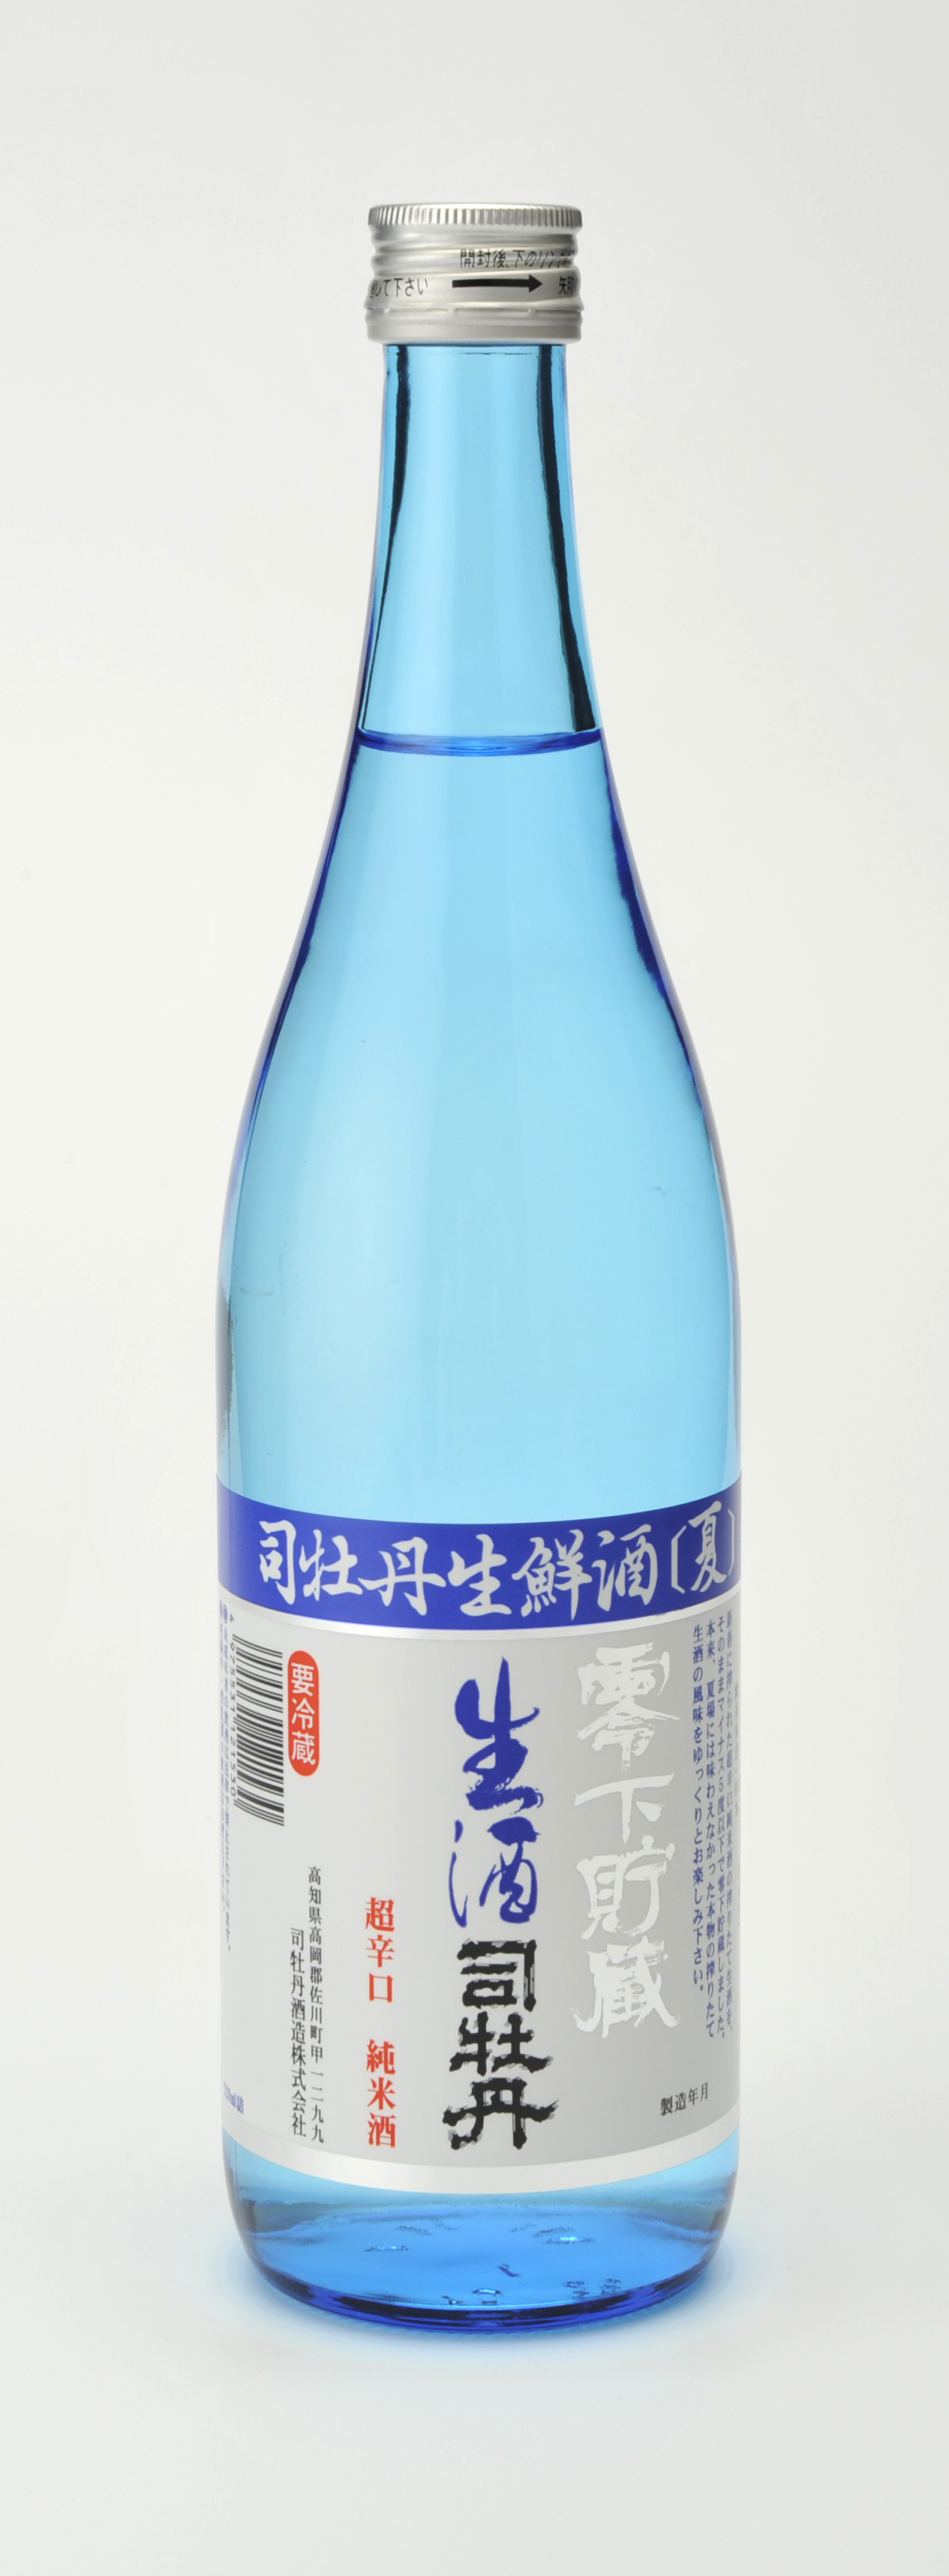 格安 価格でご提供いたします 司牡丹酒造 司牡丹 純米 日本を今一度 720ml ×12本KK fucoa.cl